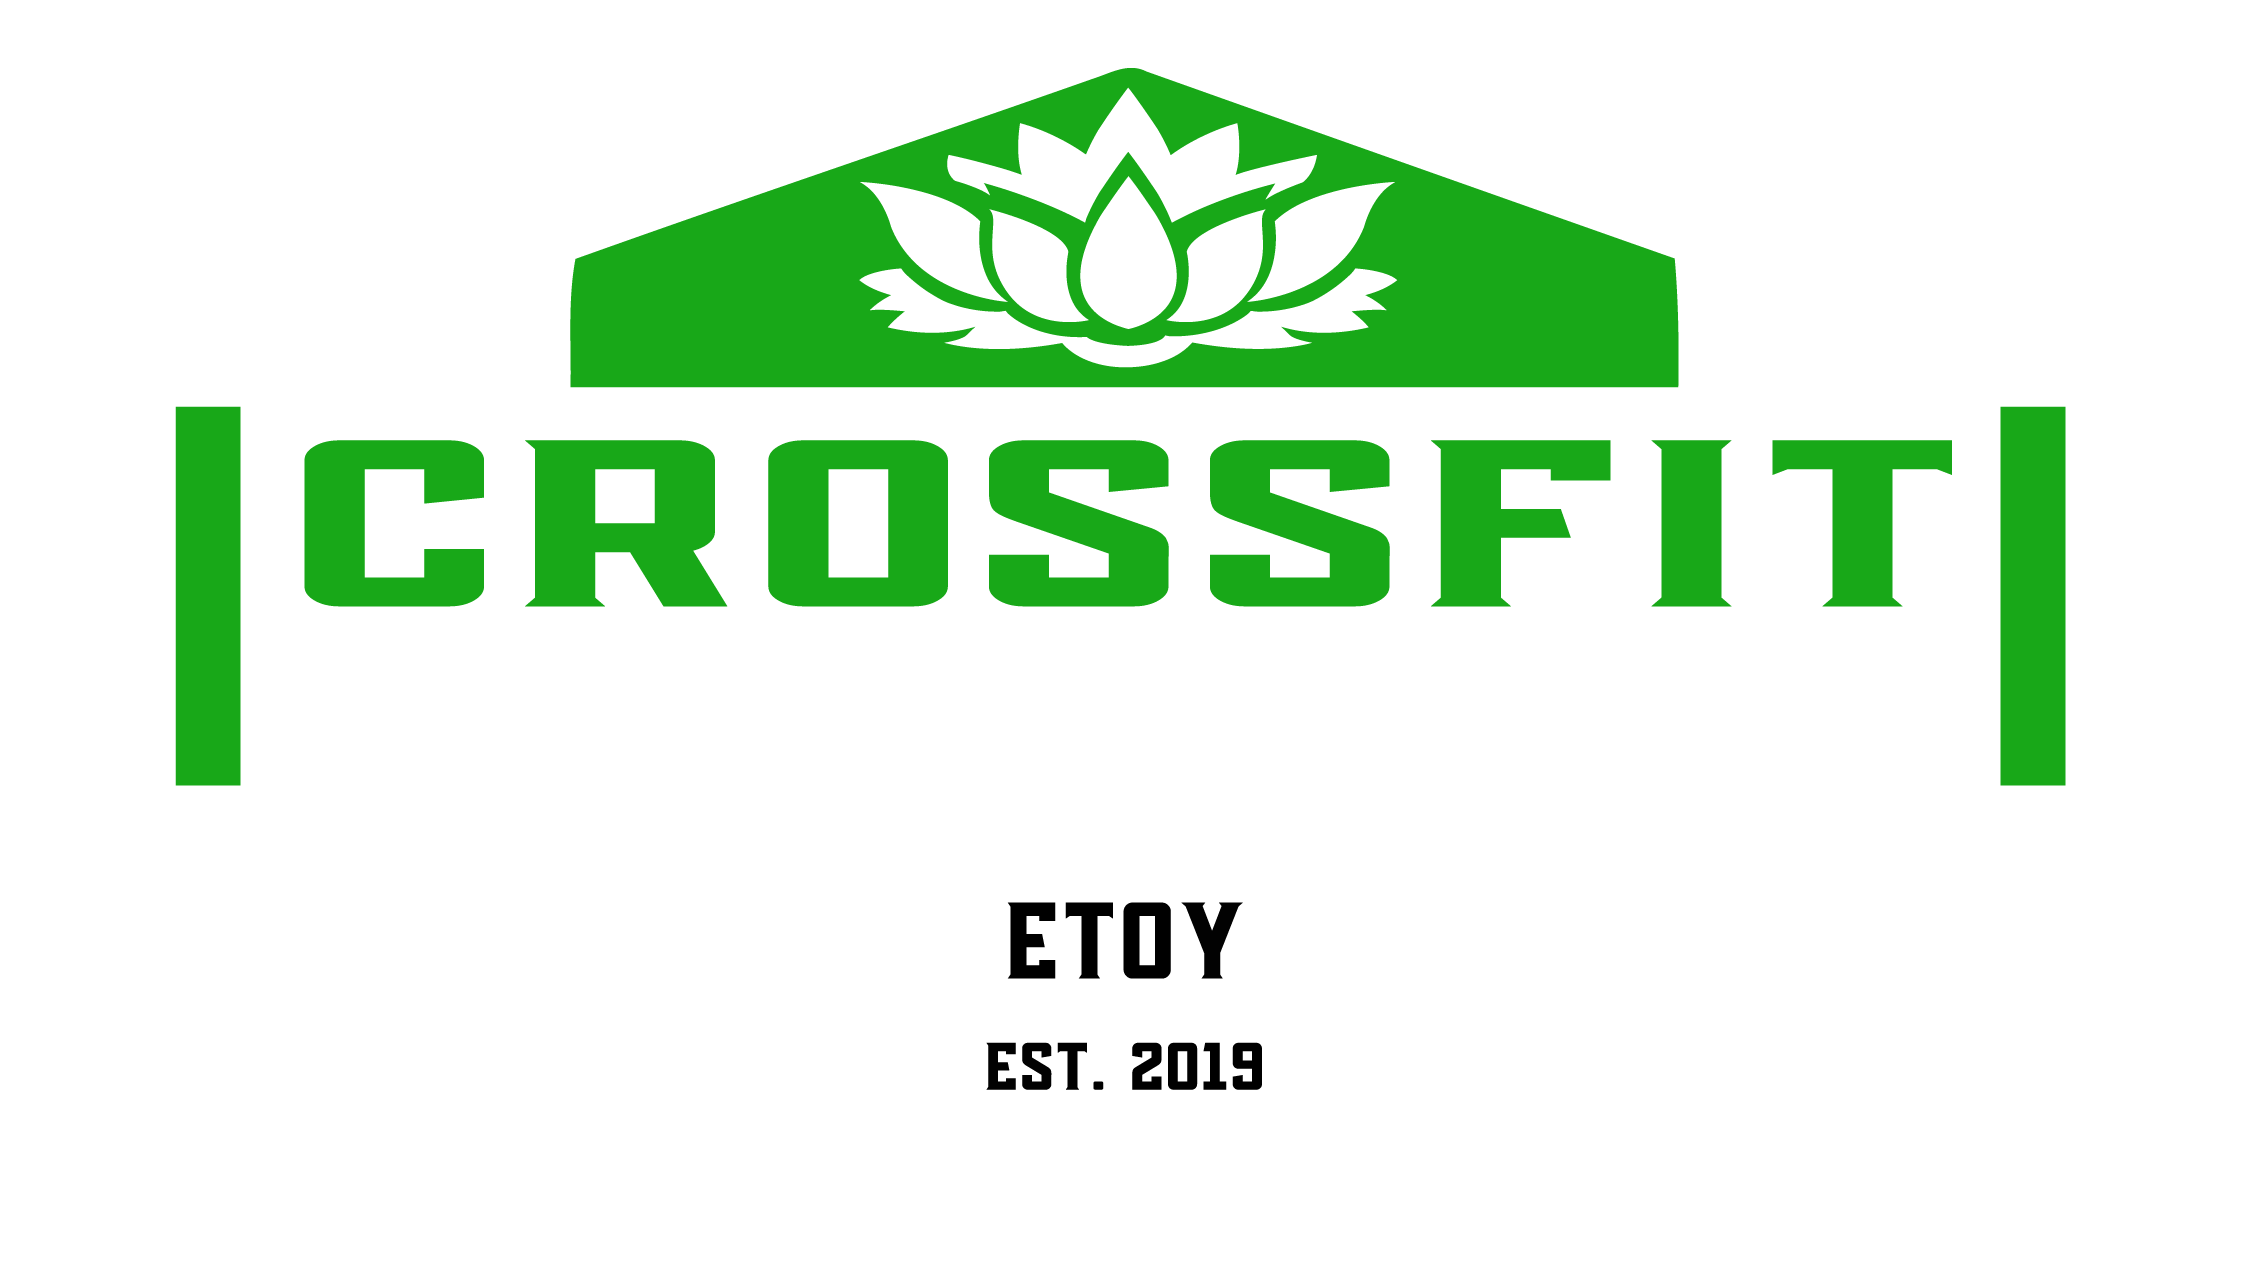 Crossfit 1163 - Etoy